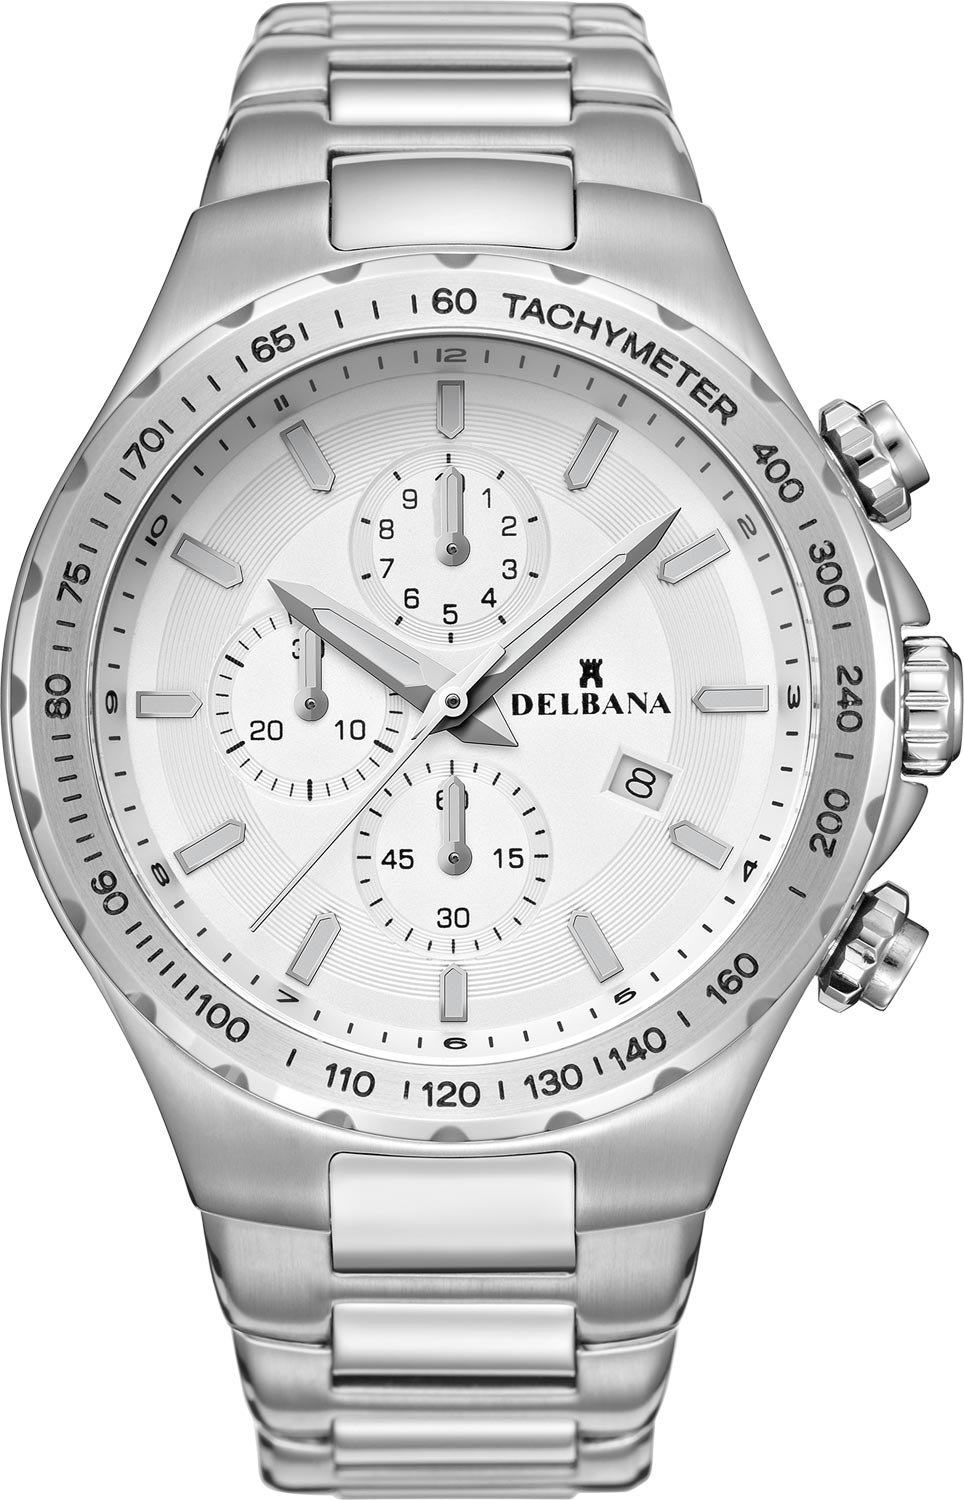 Швейцарские наручные часы Delbana 41702.674.6.061 с хронографом